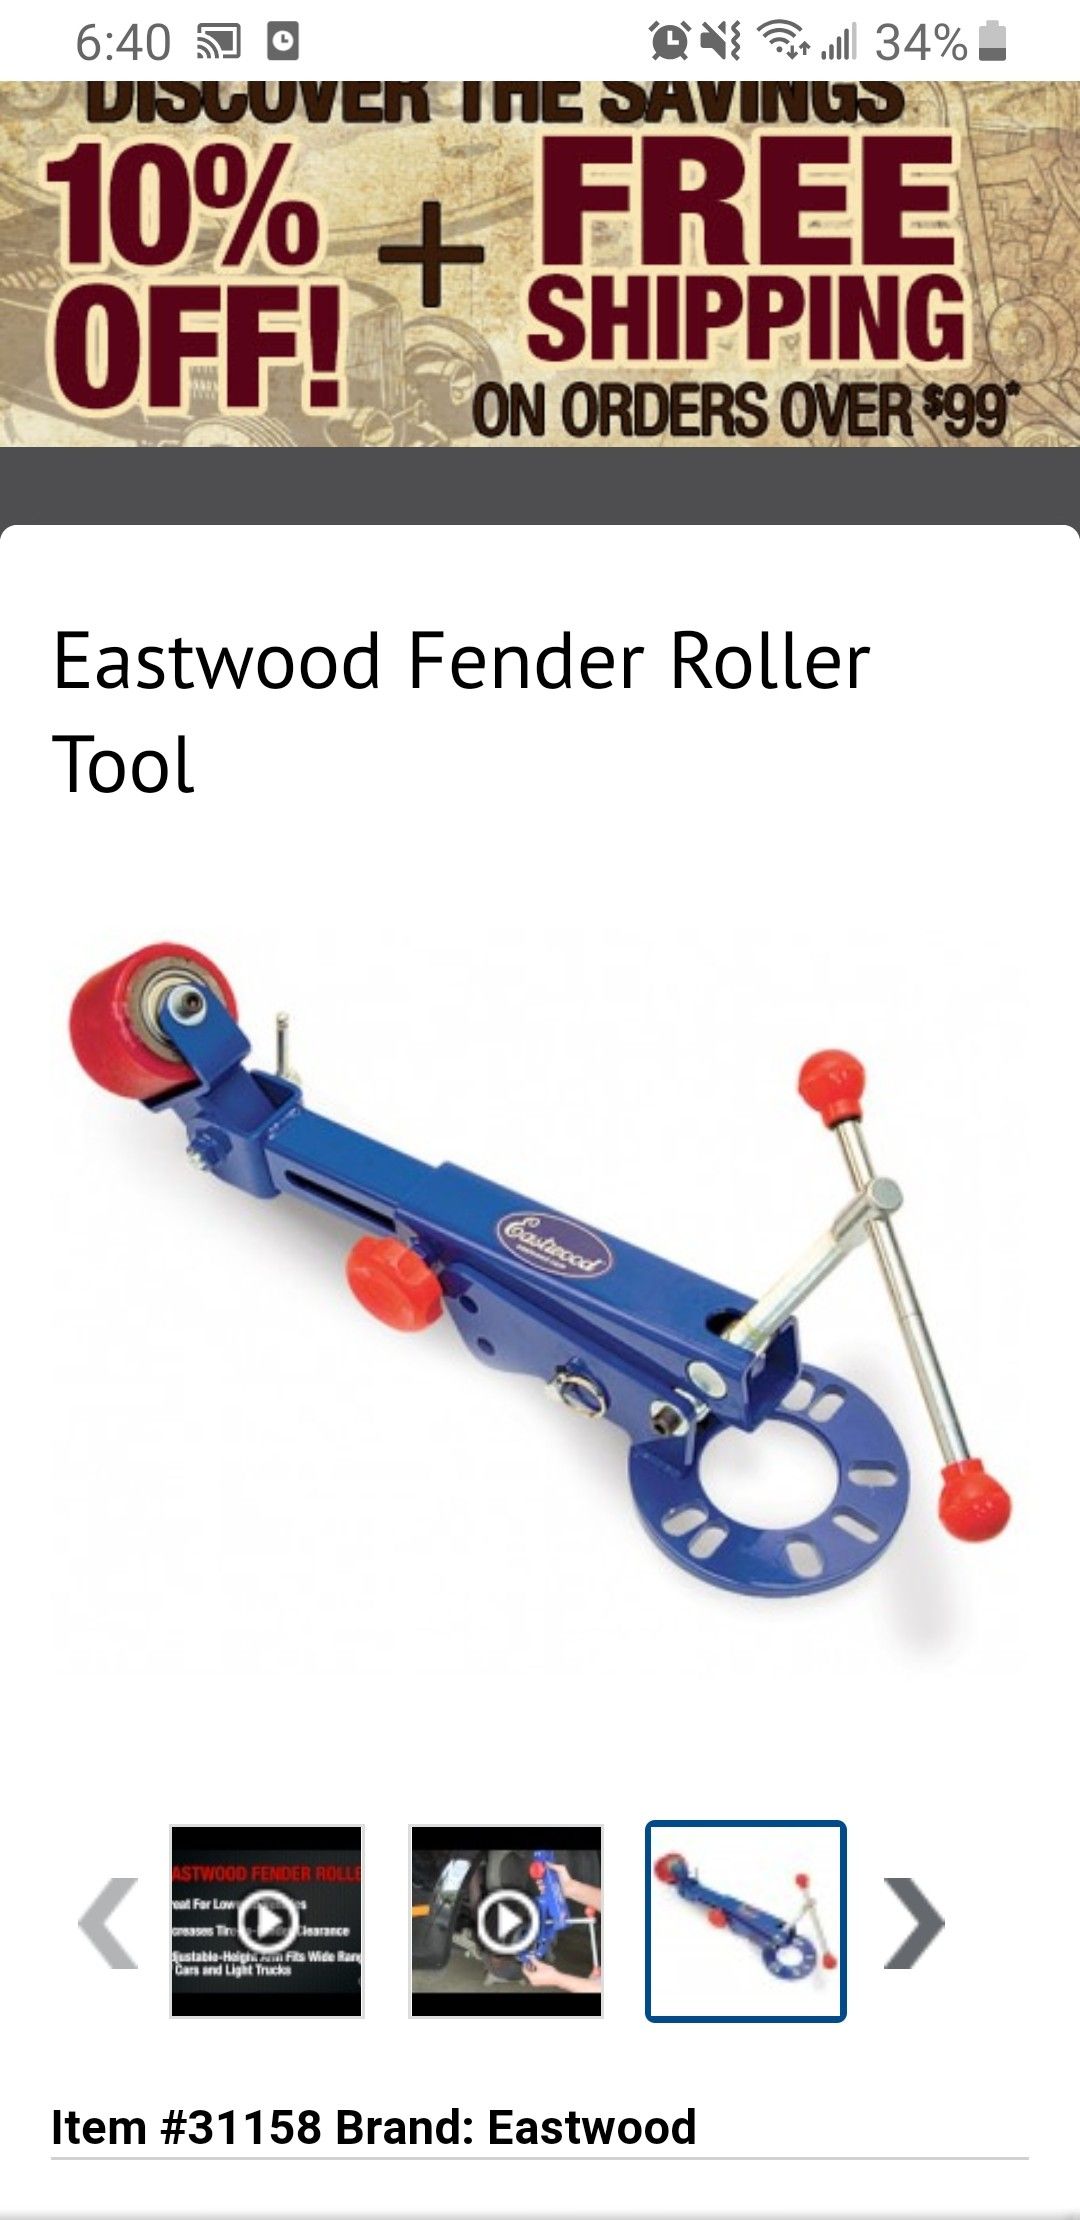 Fender roller